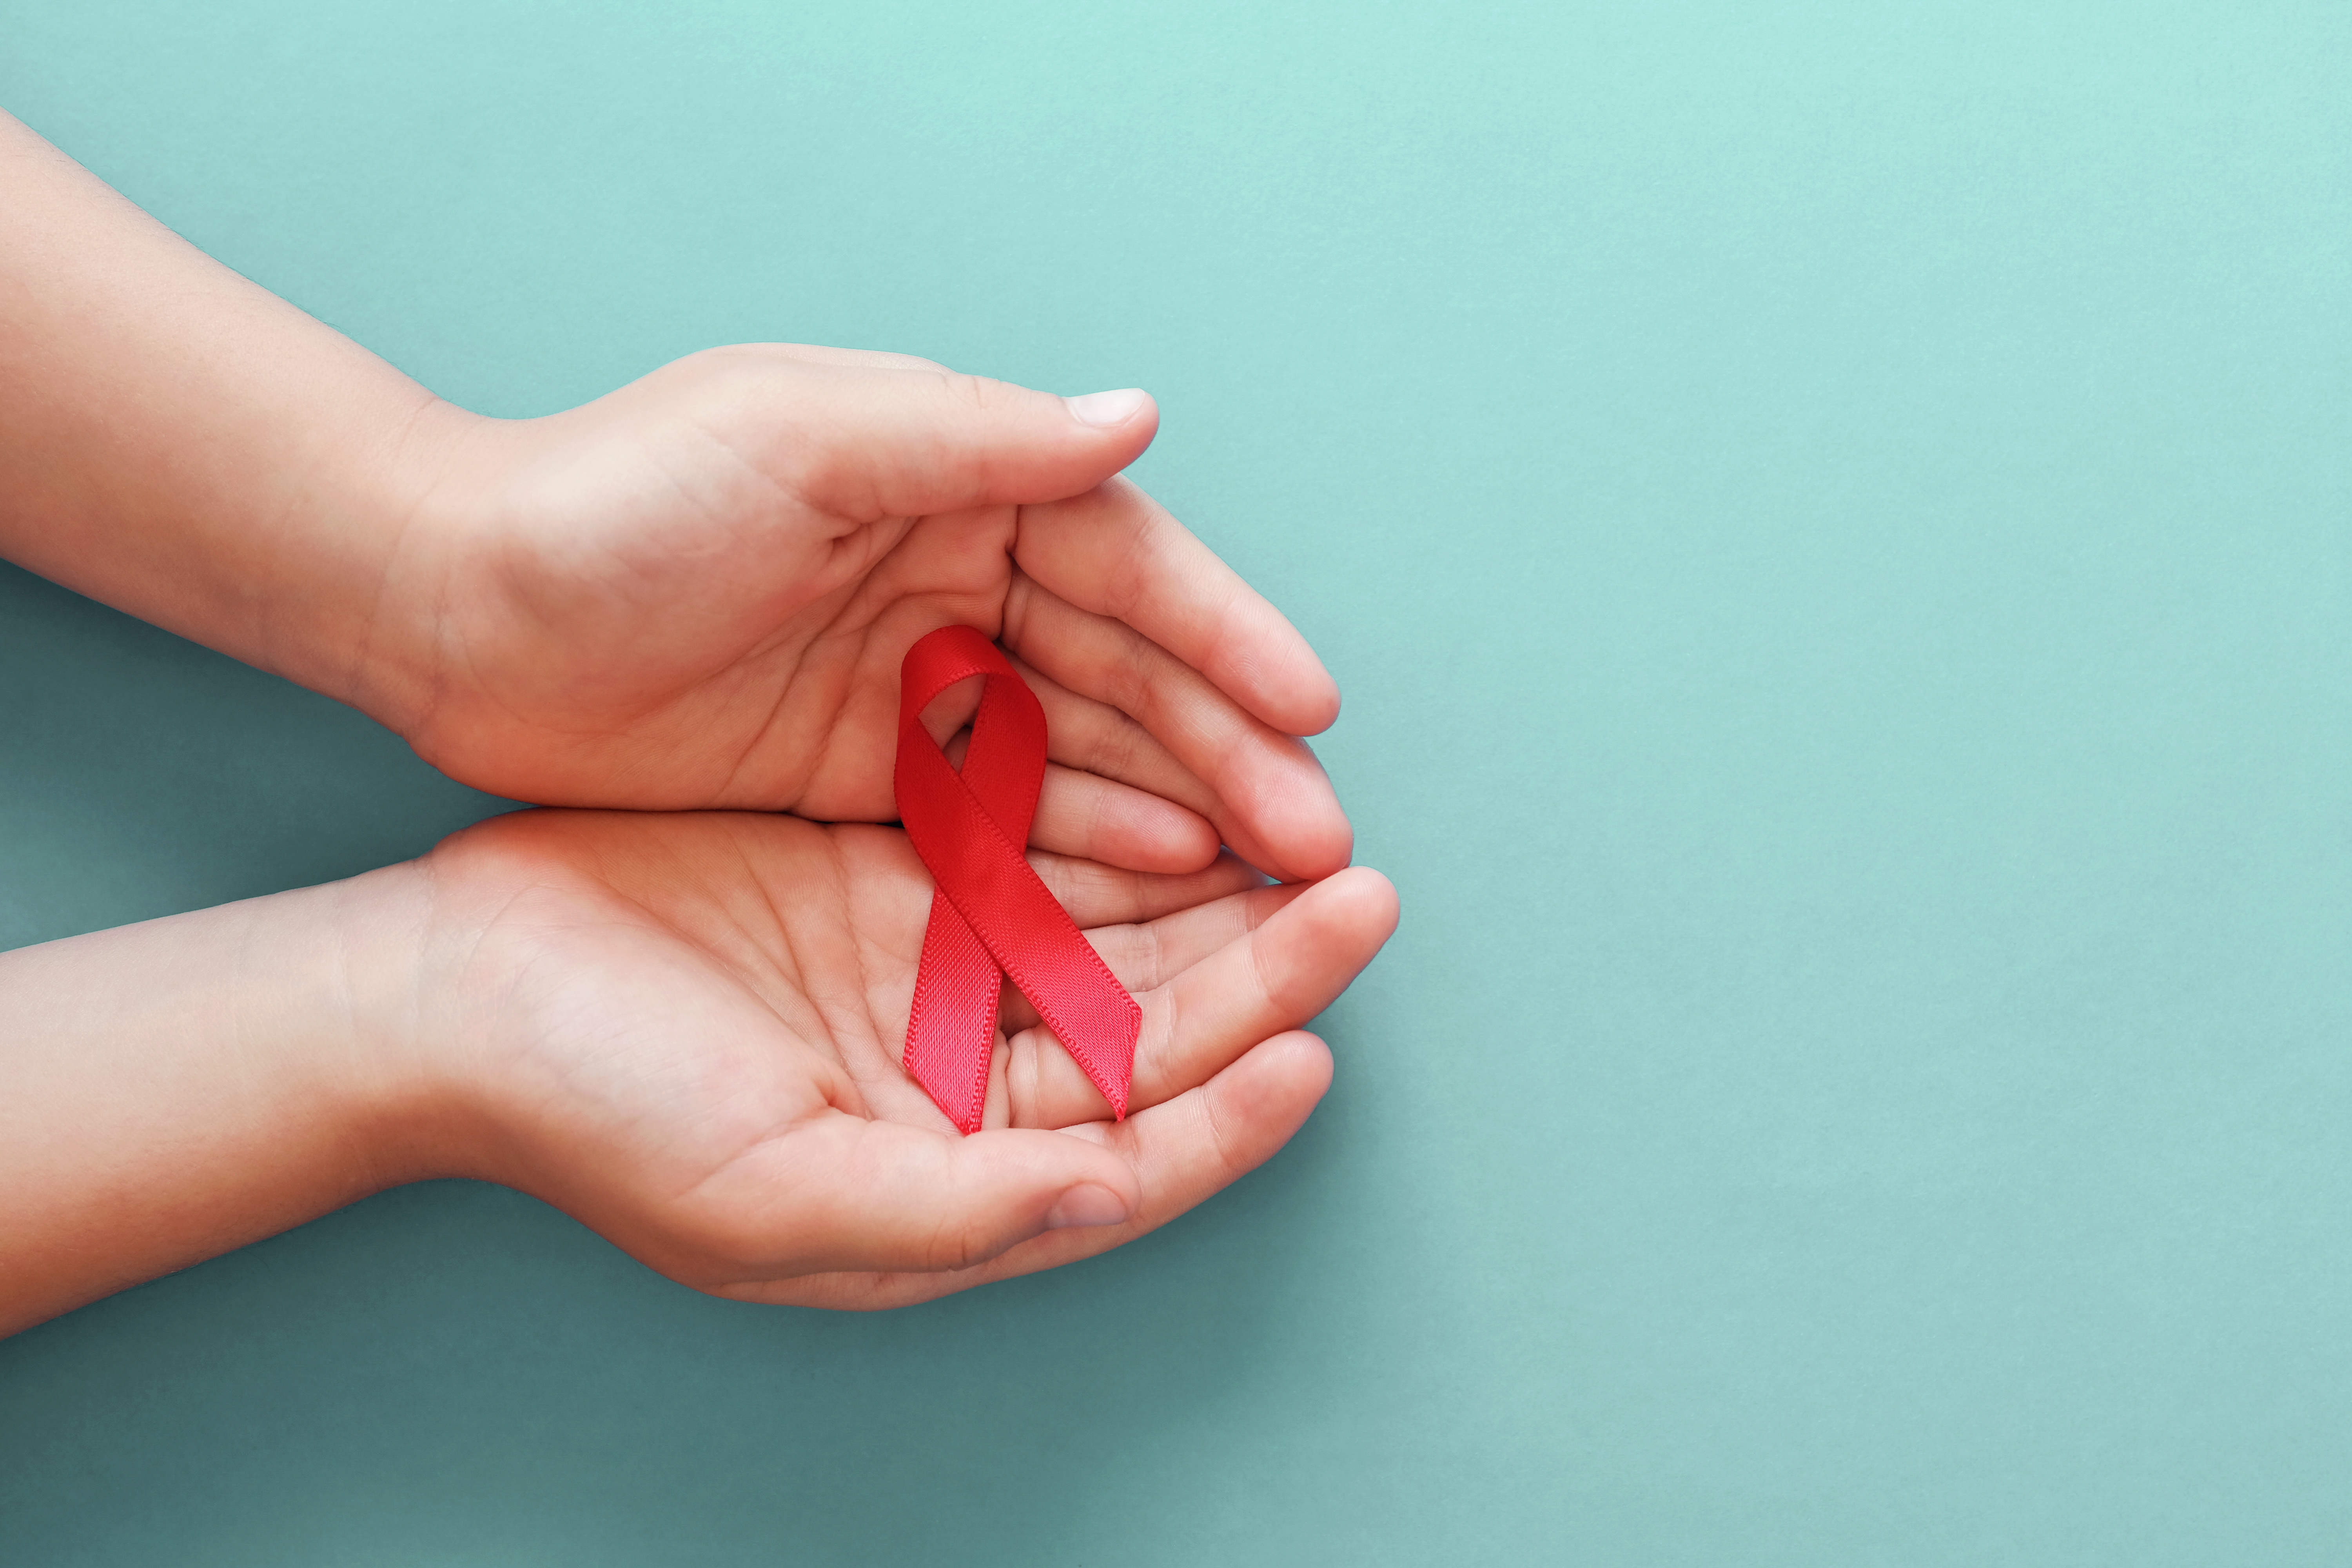 NUOVE PROSPETTIVE NELLA LOTTA ALL’HIV, IL VIRUS CHE FA PAURA 